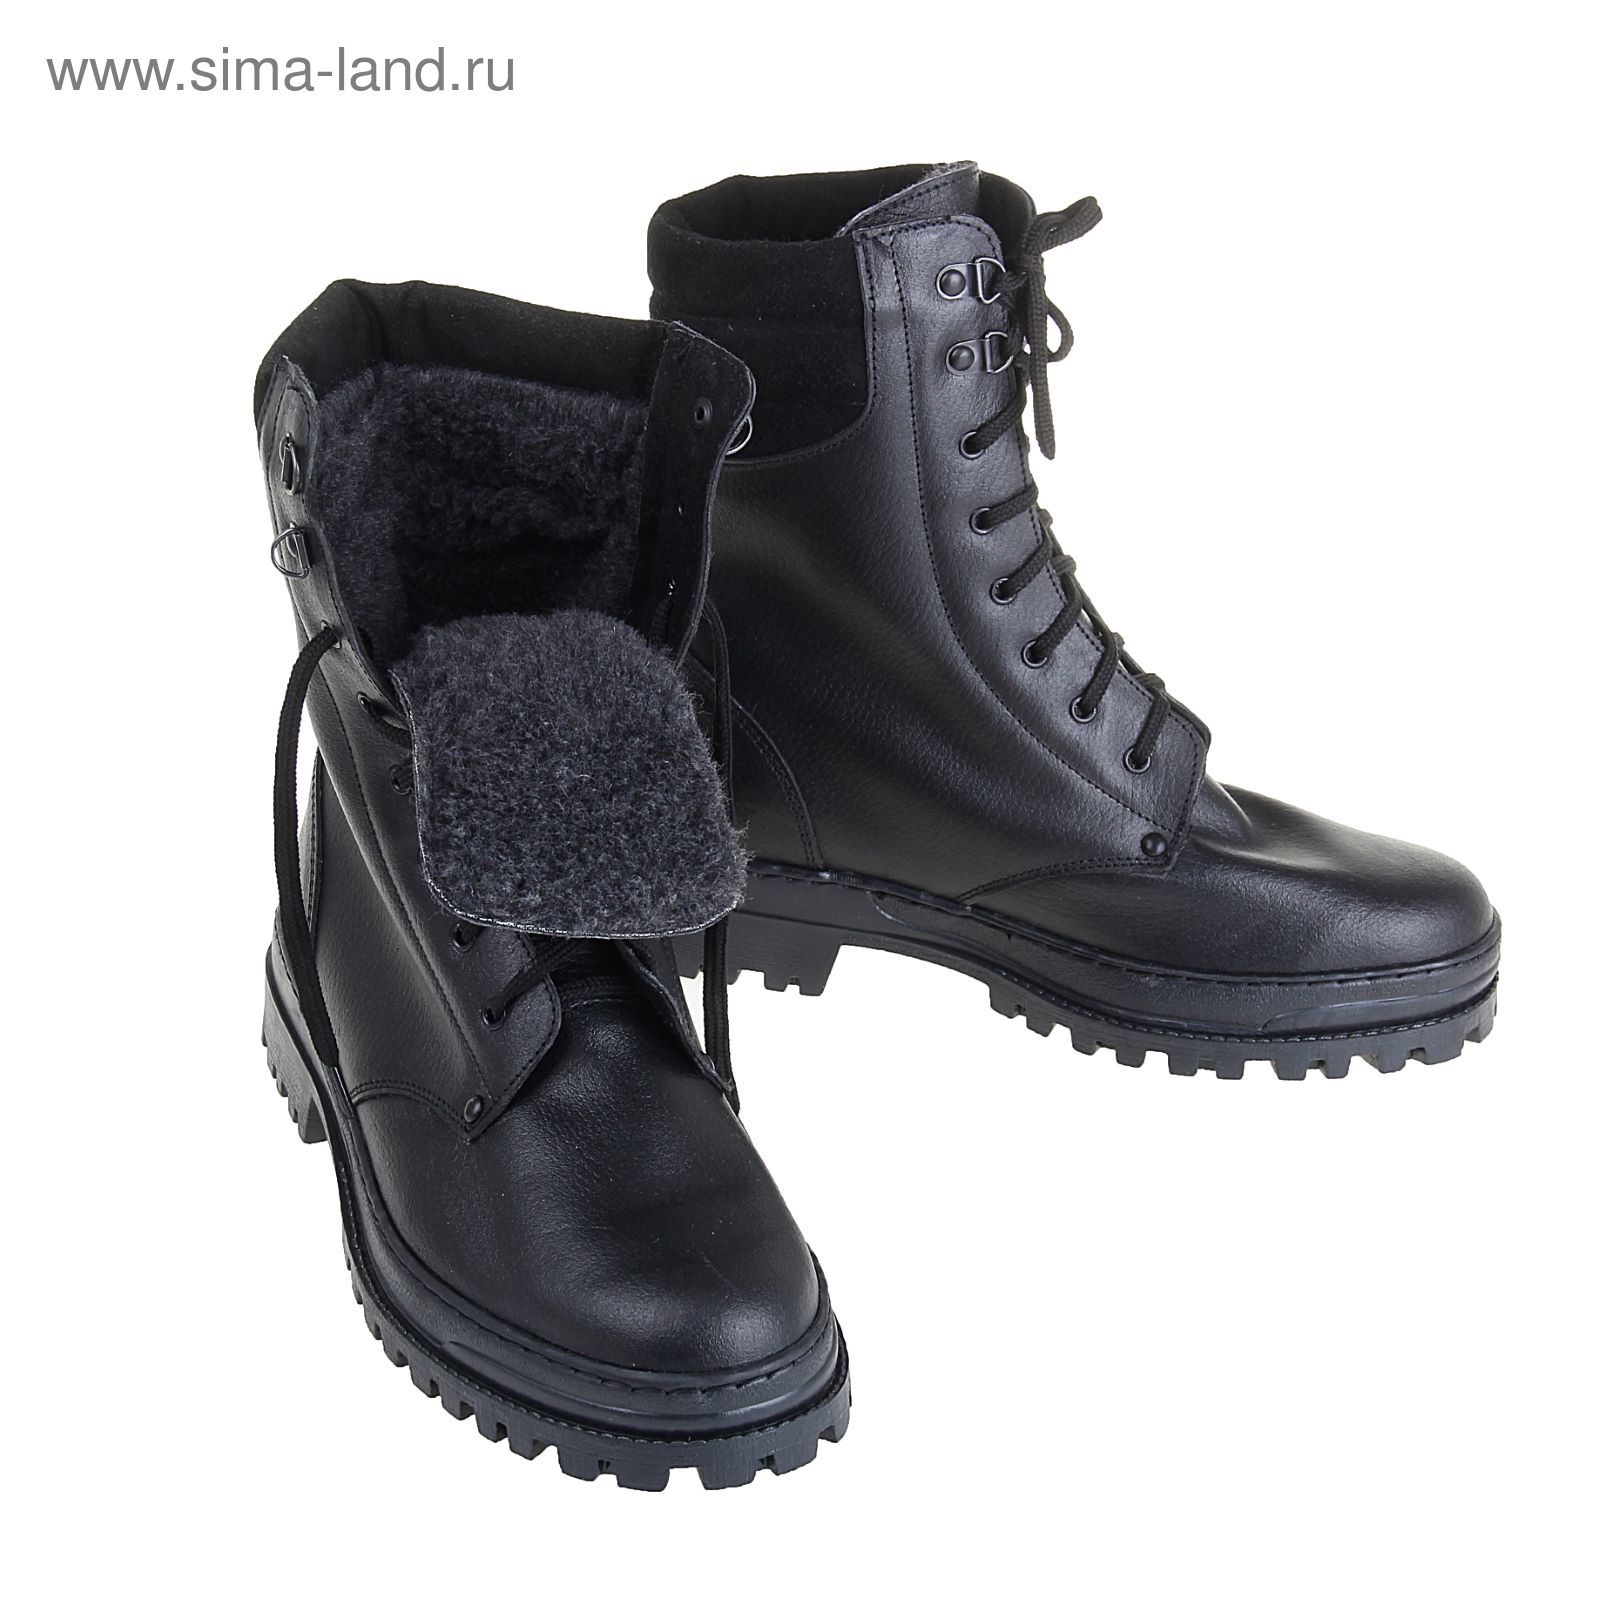 Тактические ботинки "БМ Омон-2", искуственный мех, зимние, размер-43